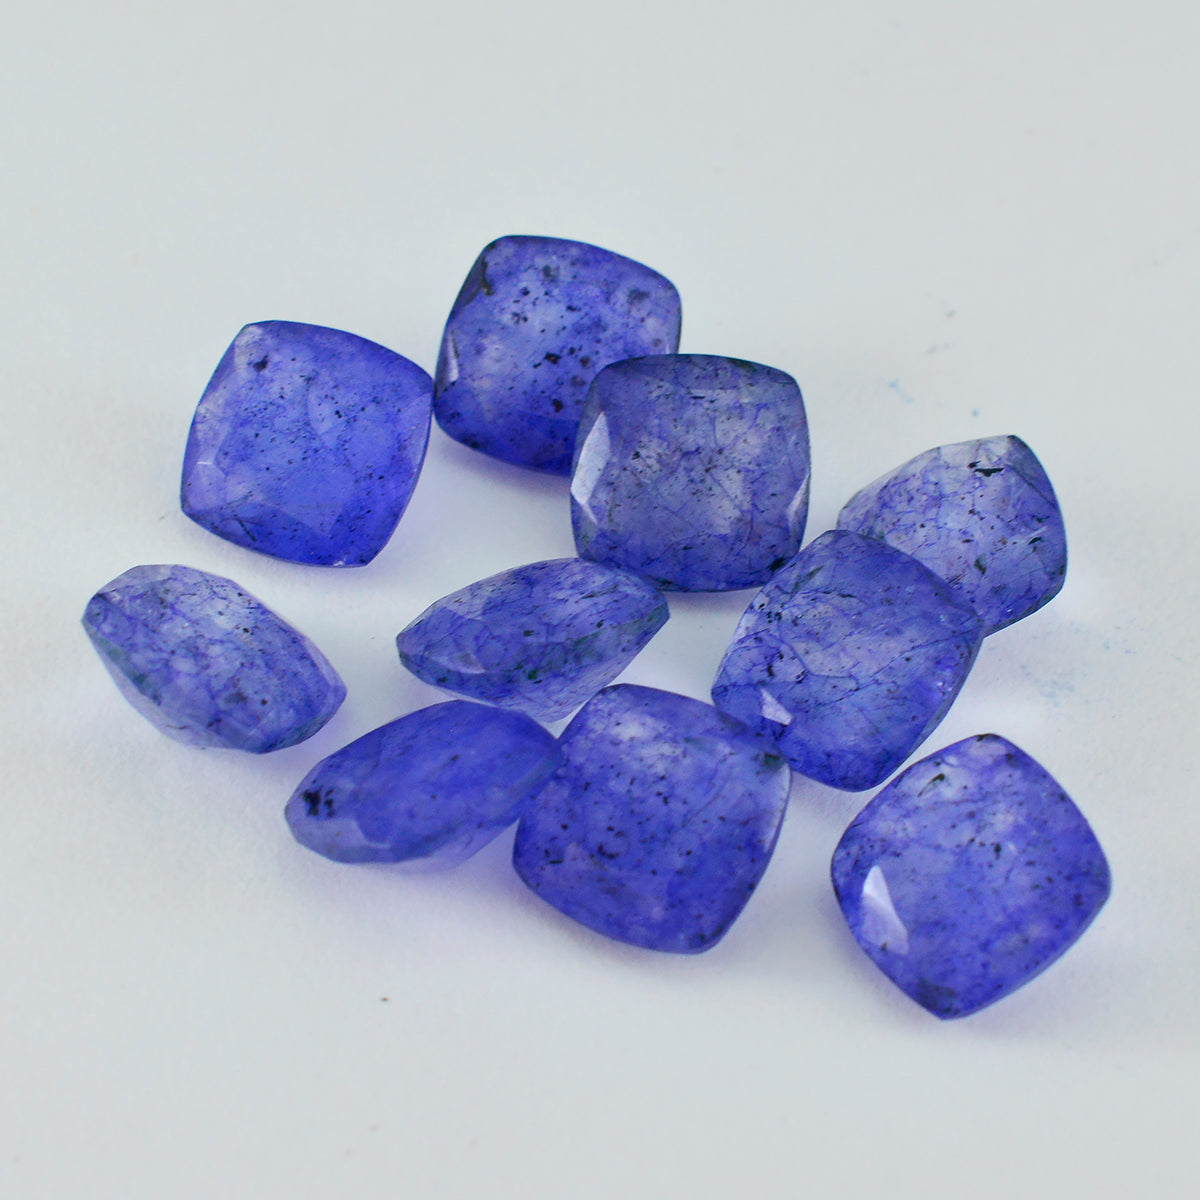 riyogems 1 шт. натуральная синяя яшма ограненная 4x4 мм в форме подушки драгоценные камни удивительного качества